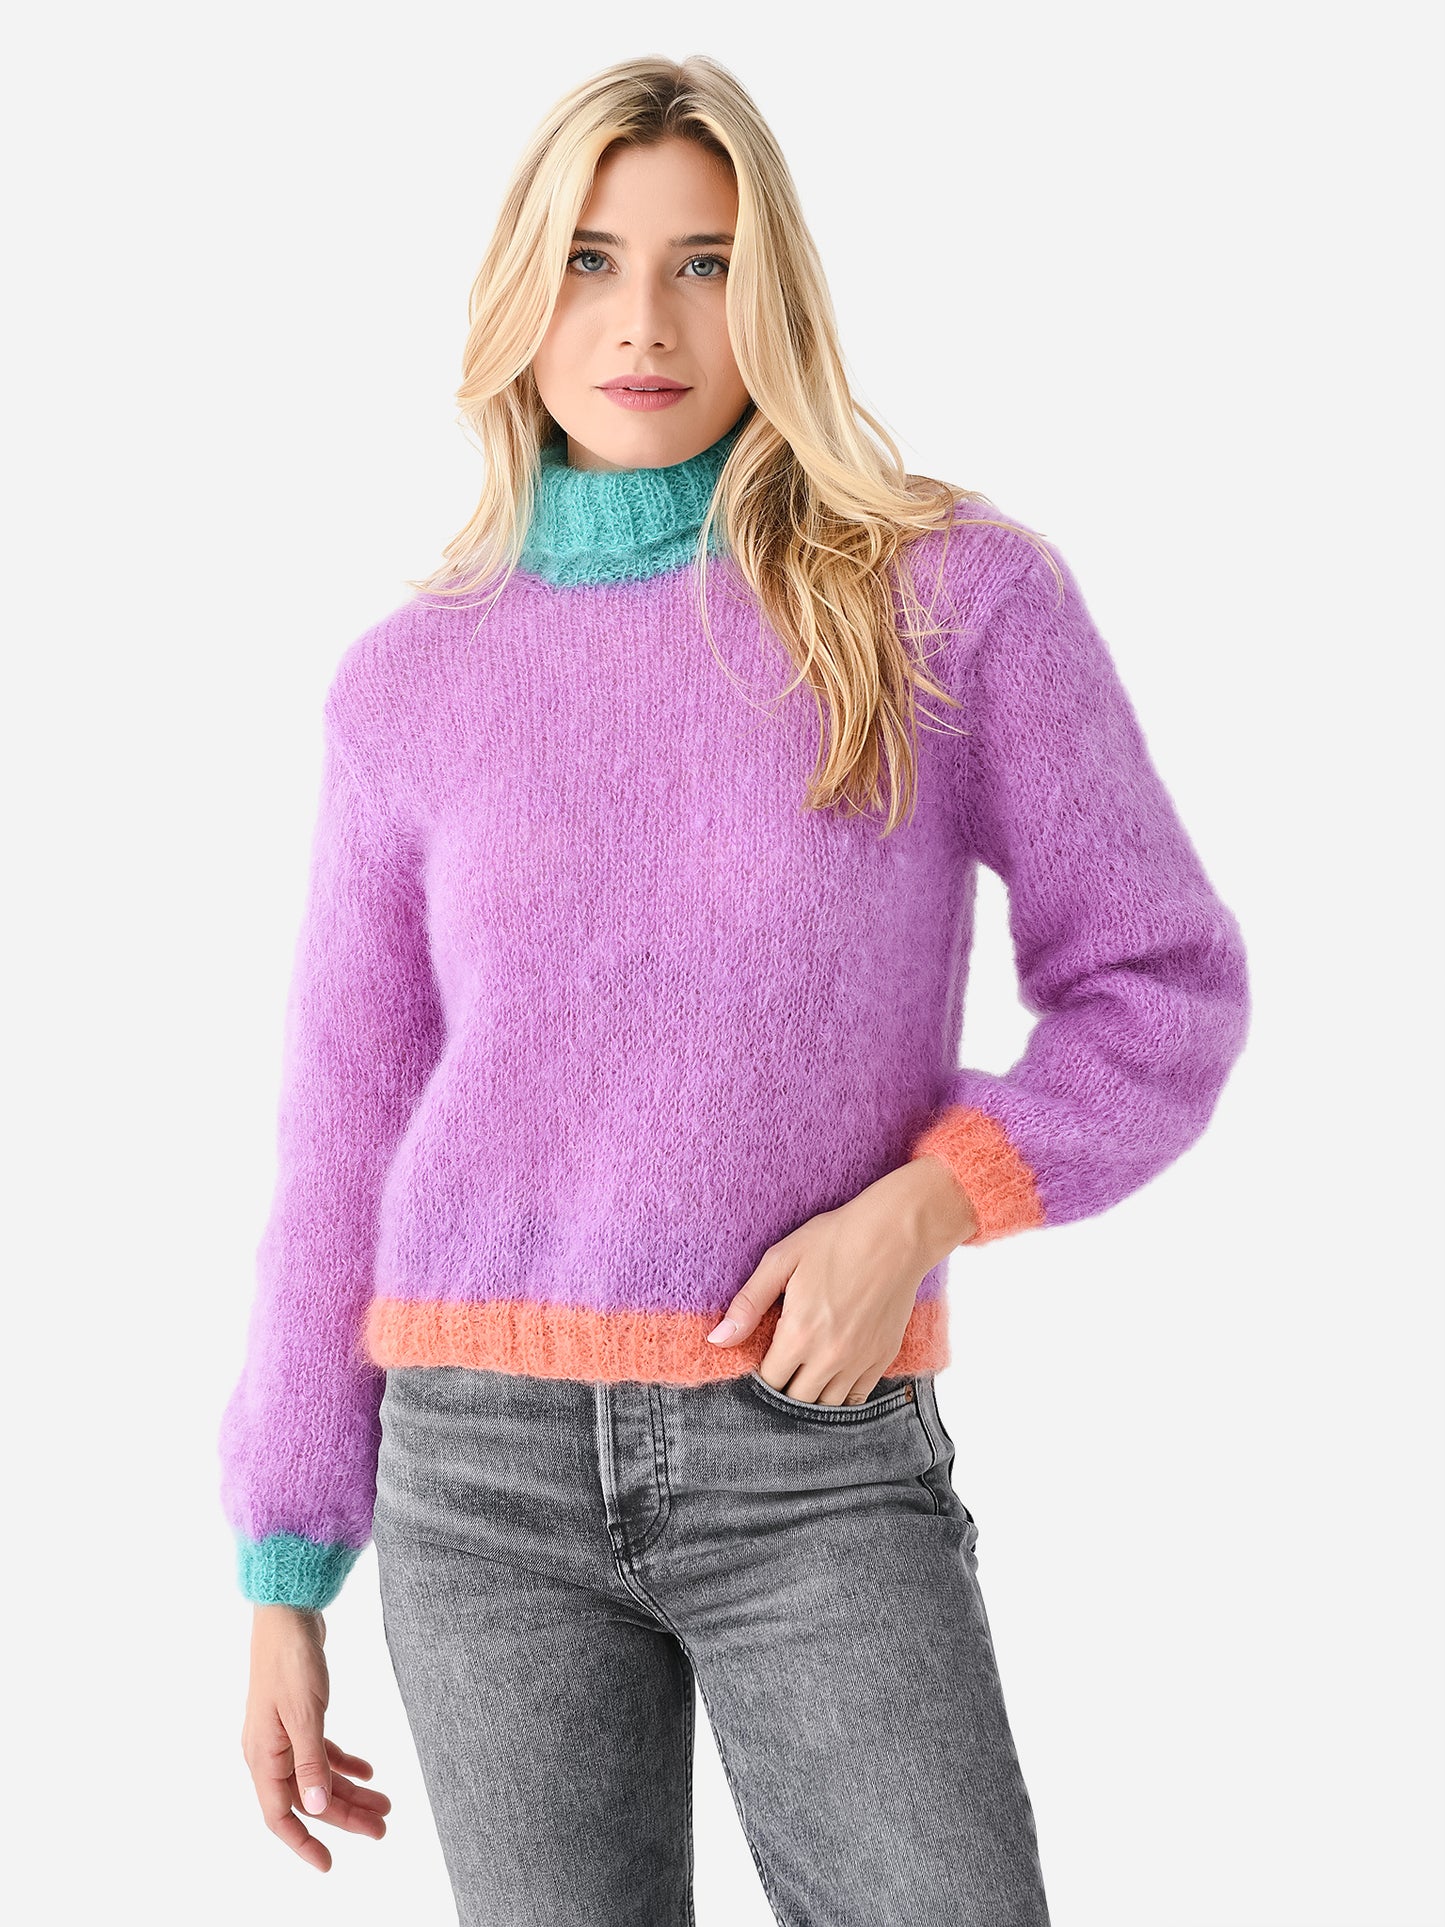 Rose Carmine Women's High Neck Colorblock Sweater